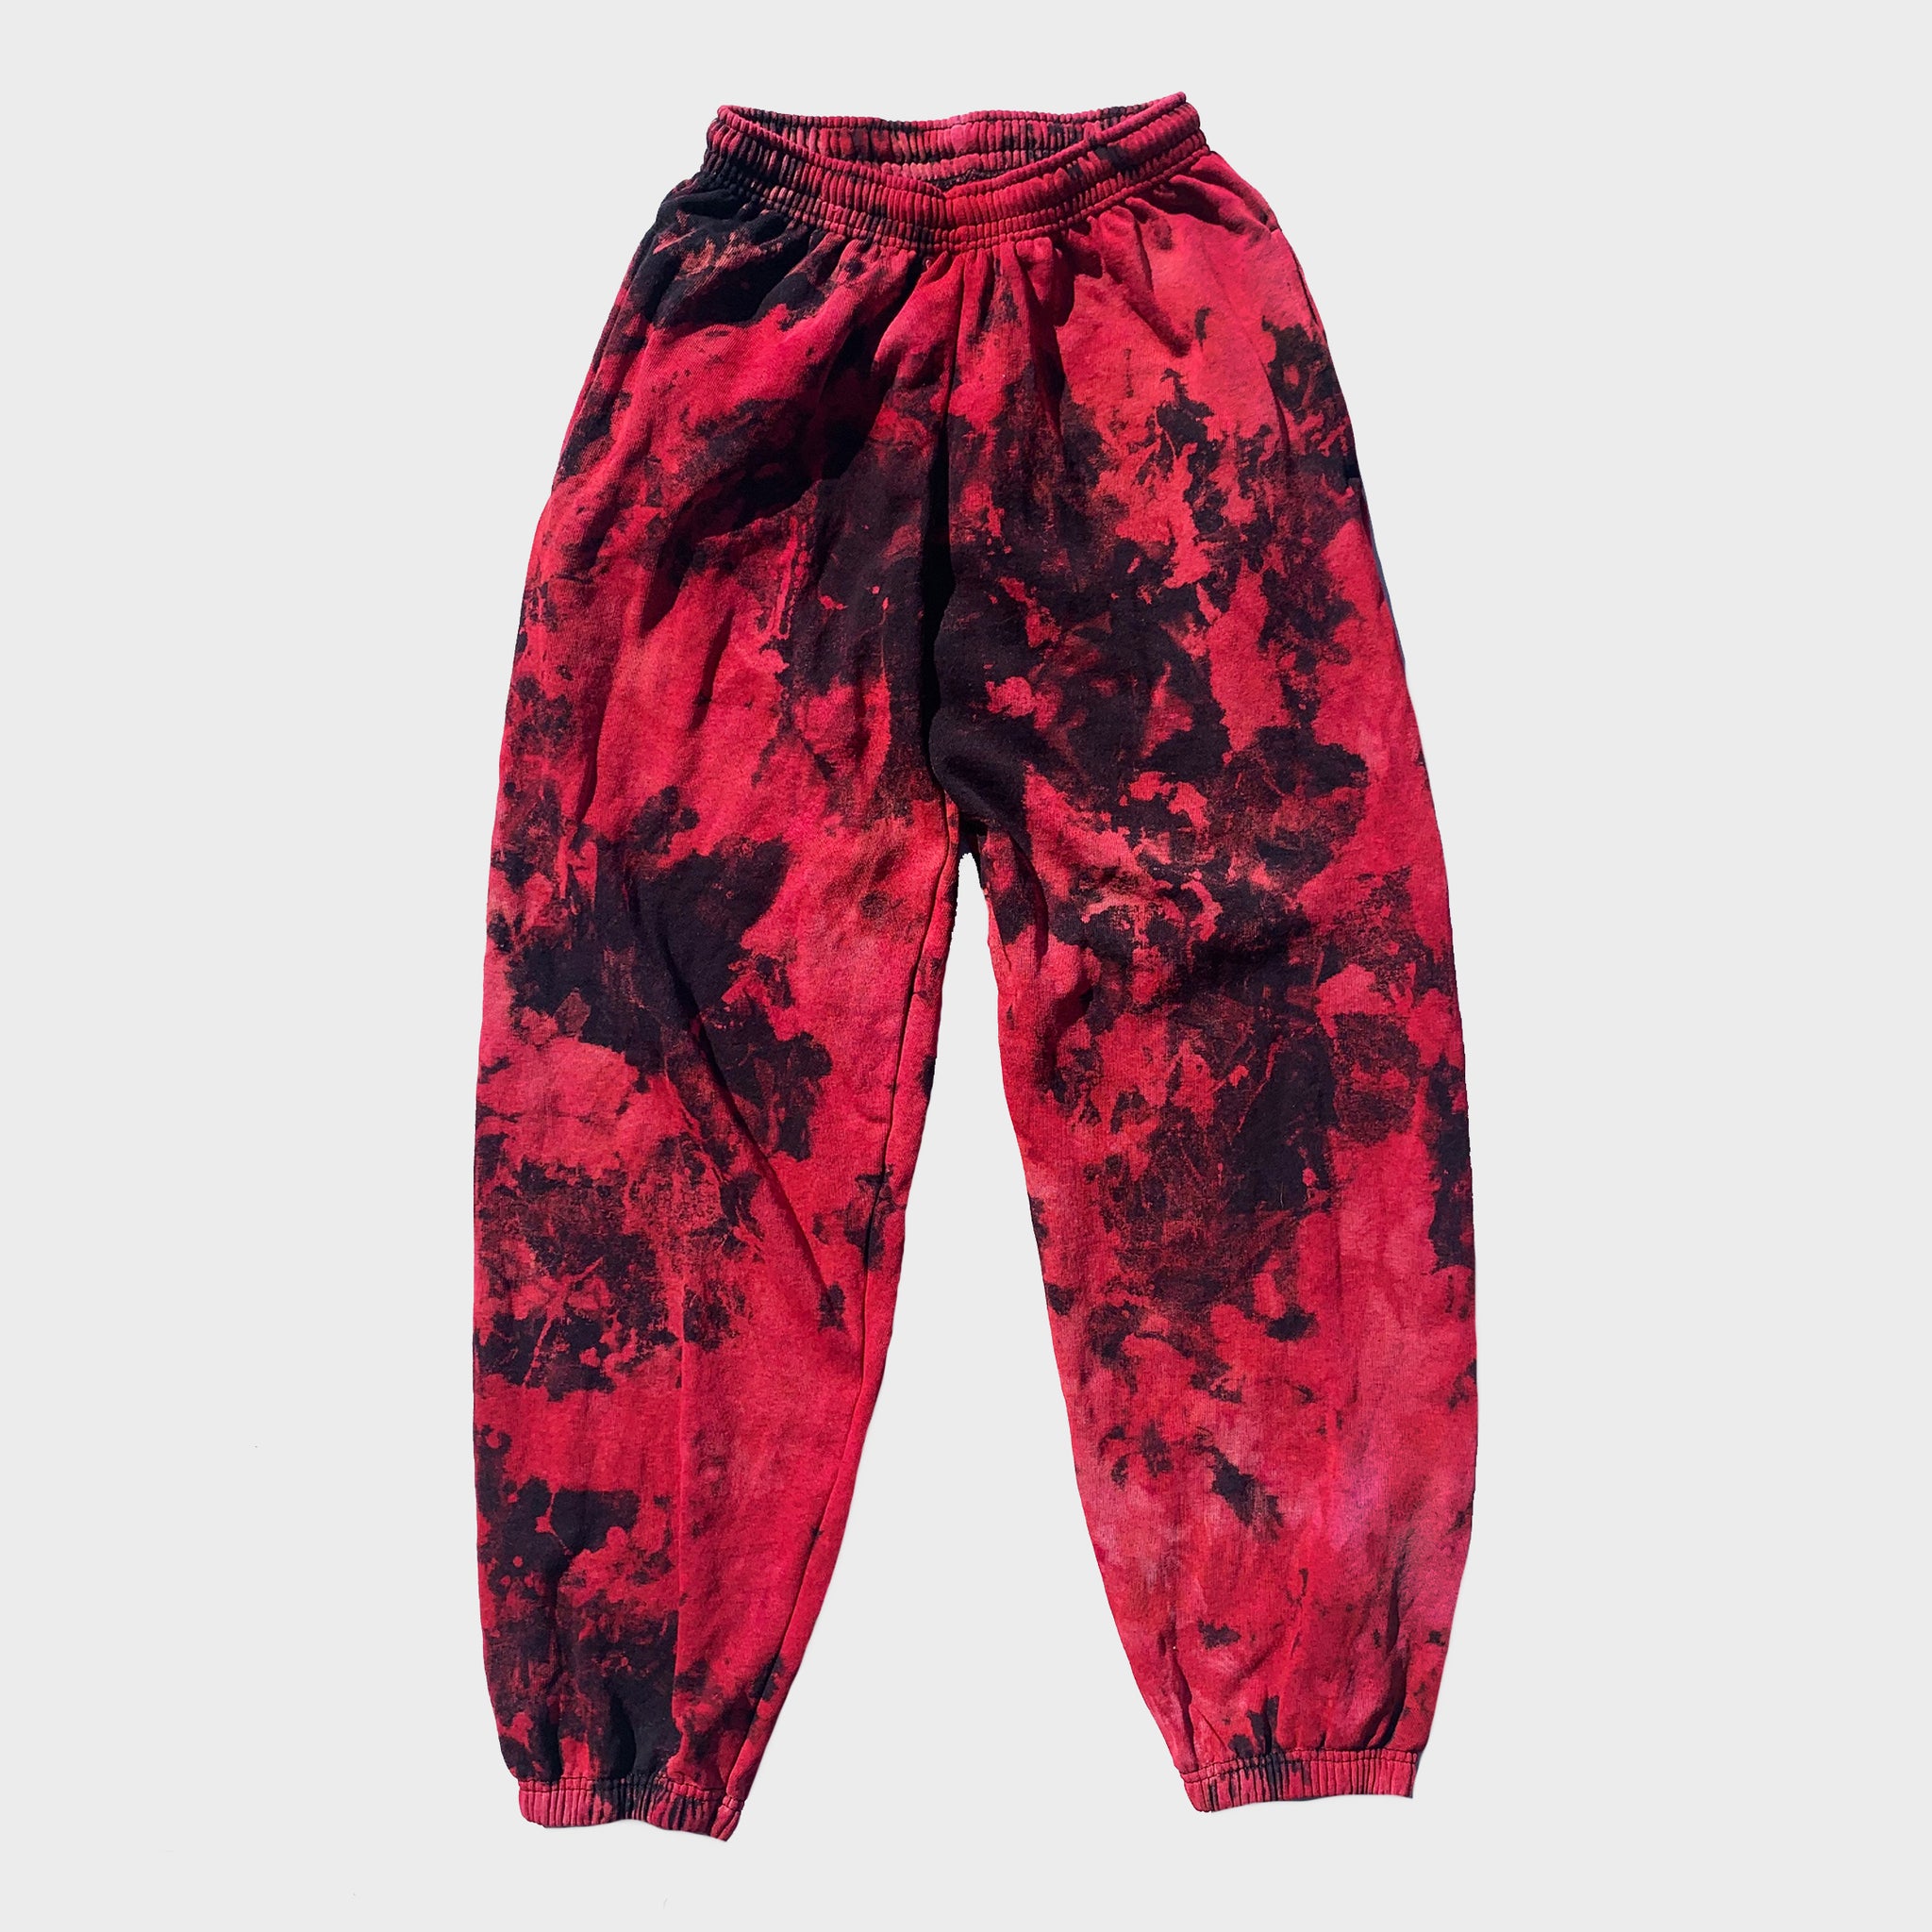 Red/Black Reverse Tie Dye Jogging Pants (Joggers) – IIMVCLOTHING